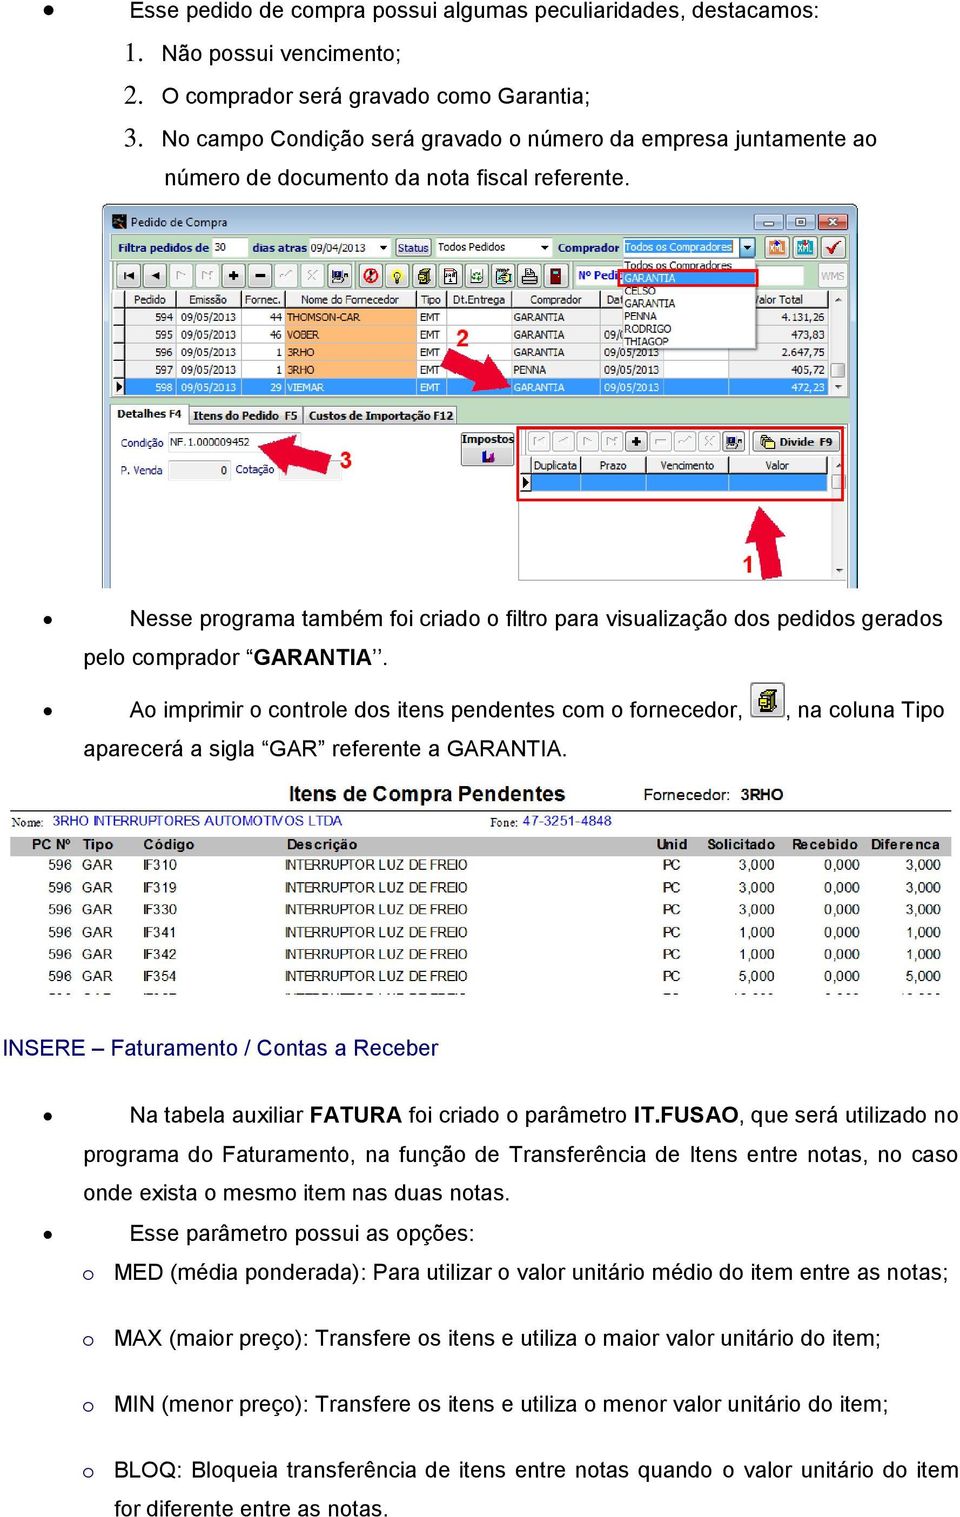 Nesse programa também foi criado o filtro para visualização dos pedidos gerados pelo comprador GARANTIA.